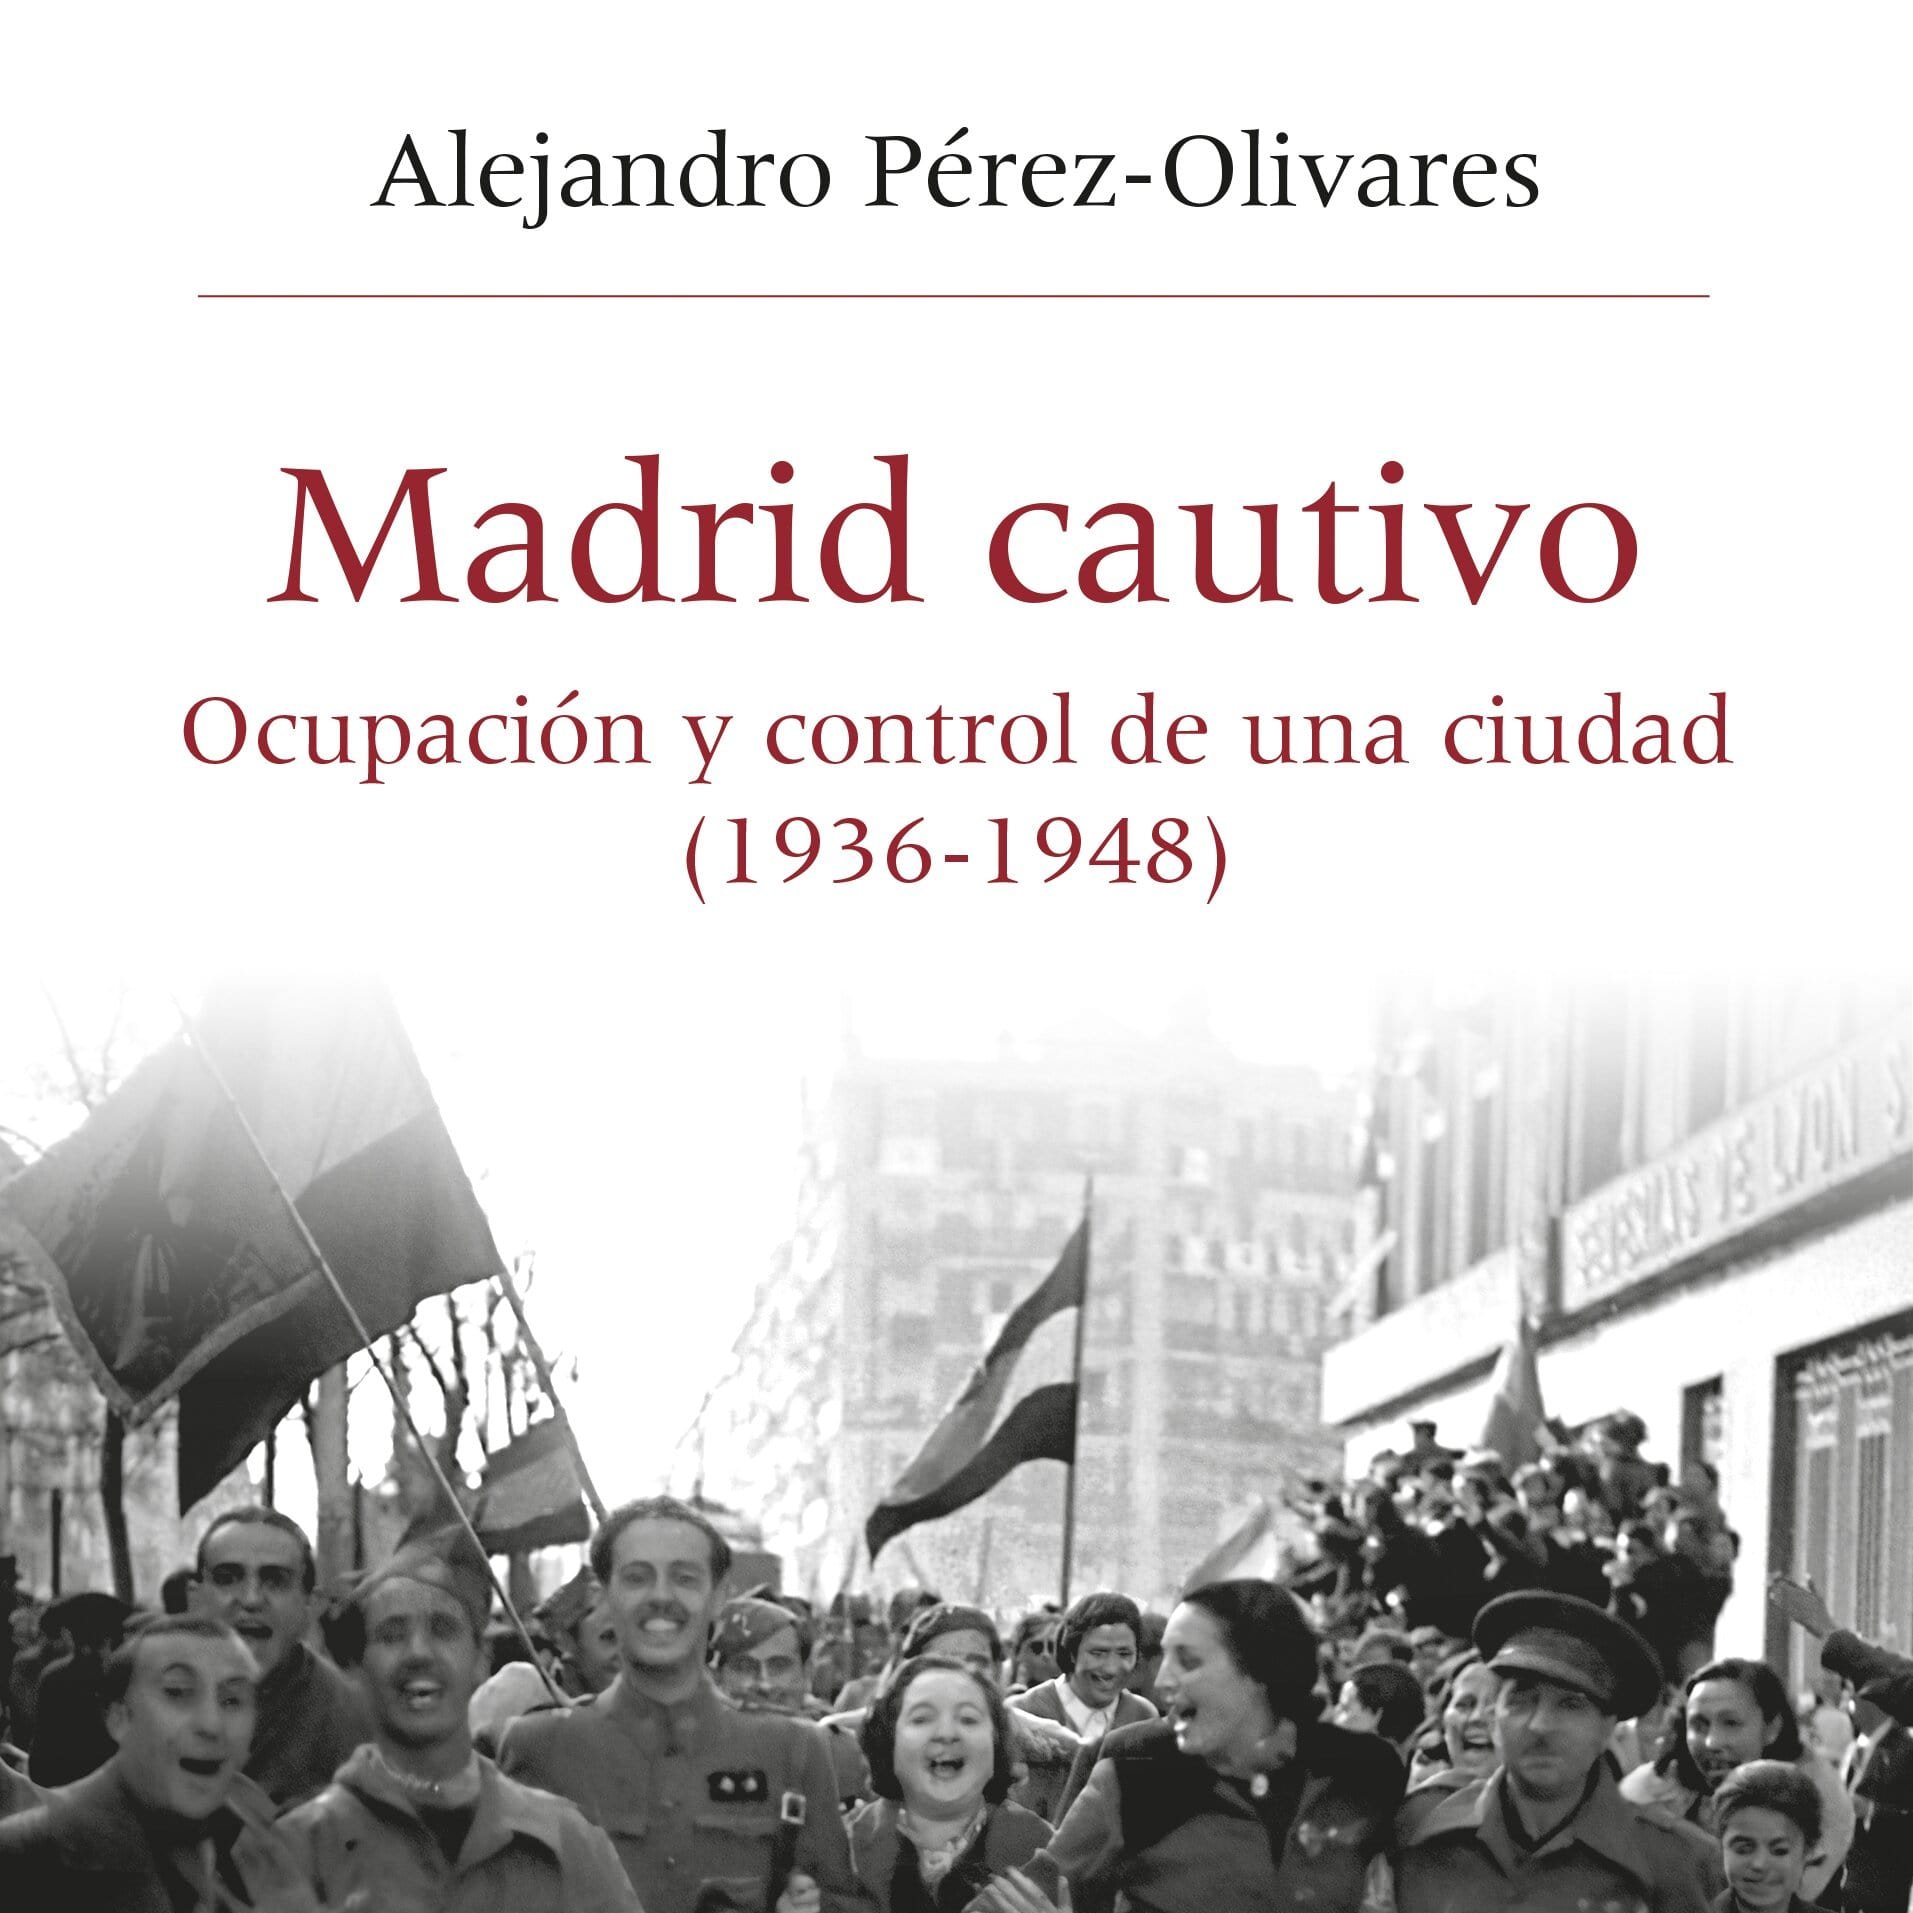 Presentación del libro «Madrid cautivo. Ocupación y control de una ciudad»